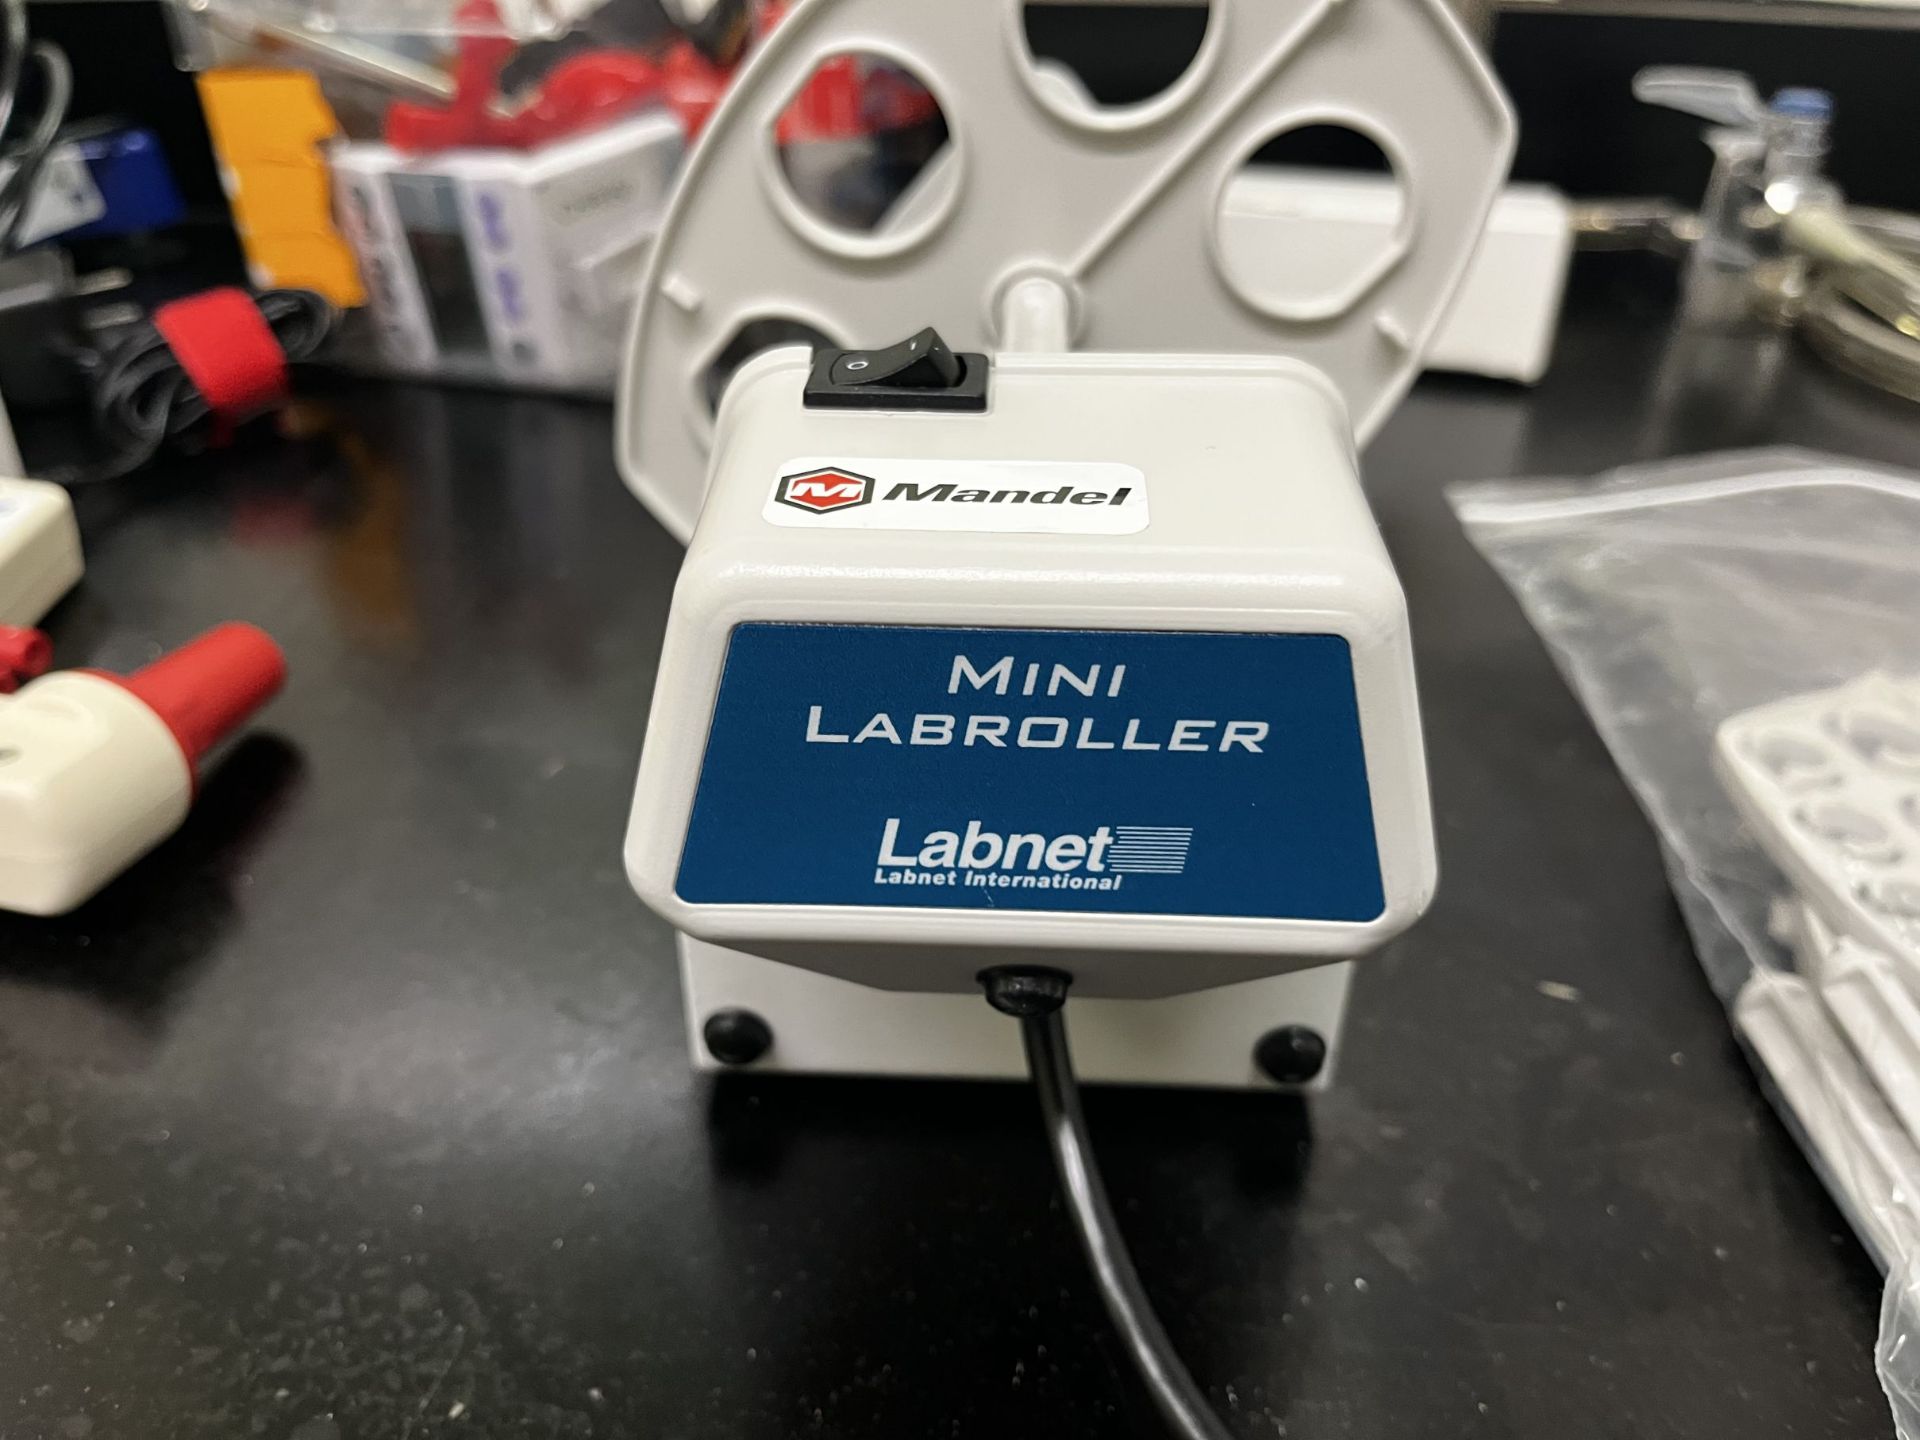 Mini Laboller